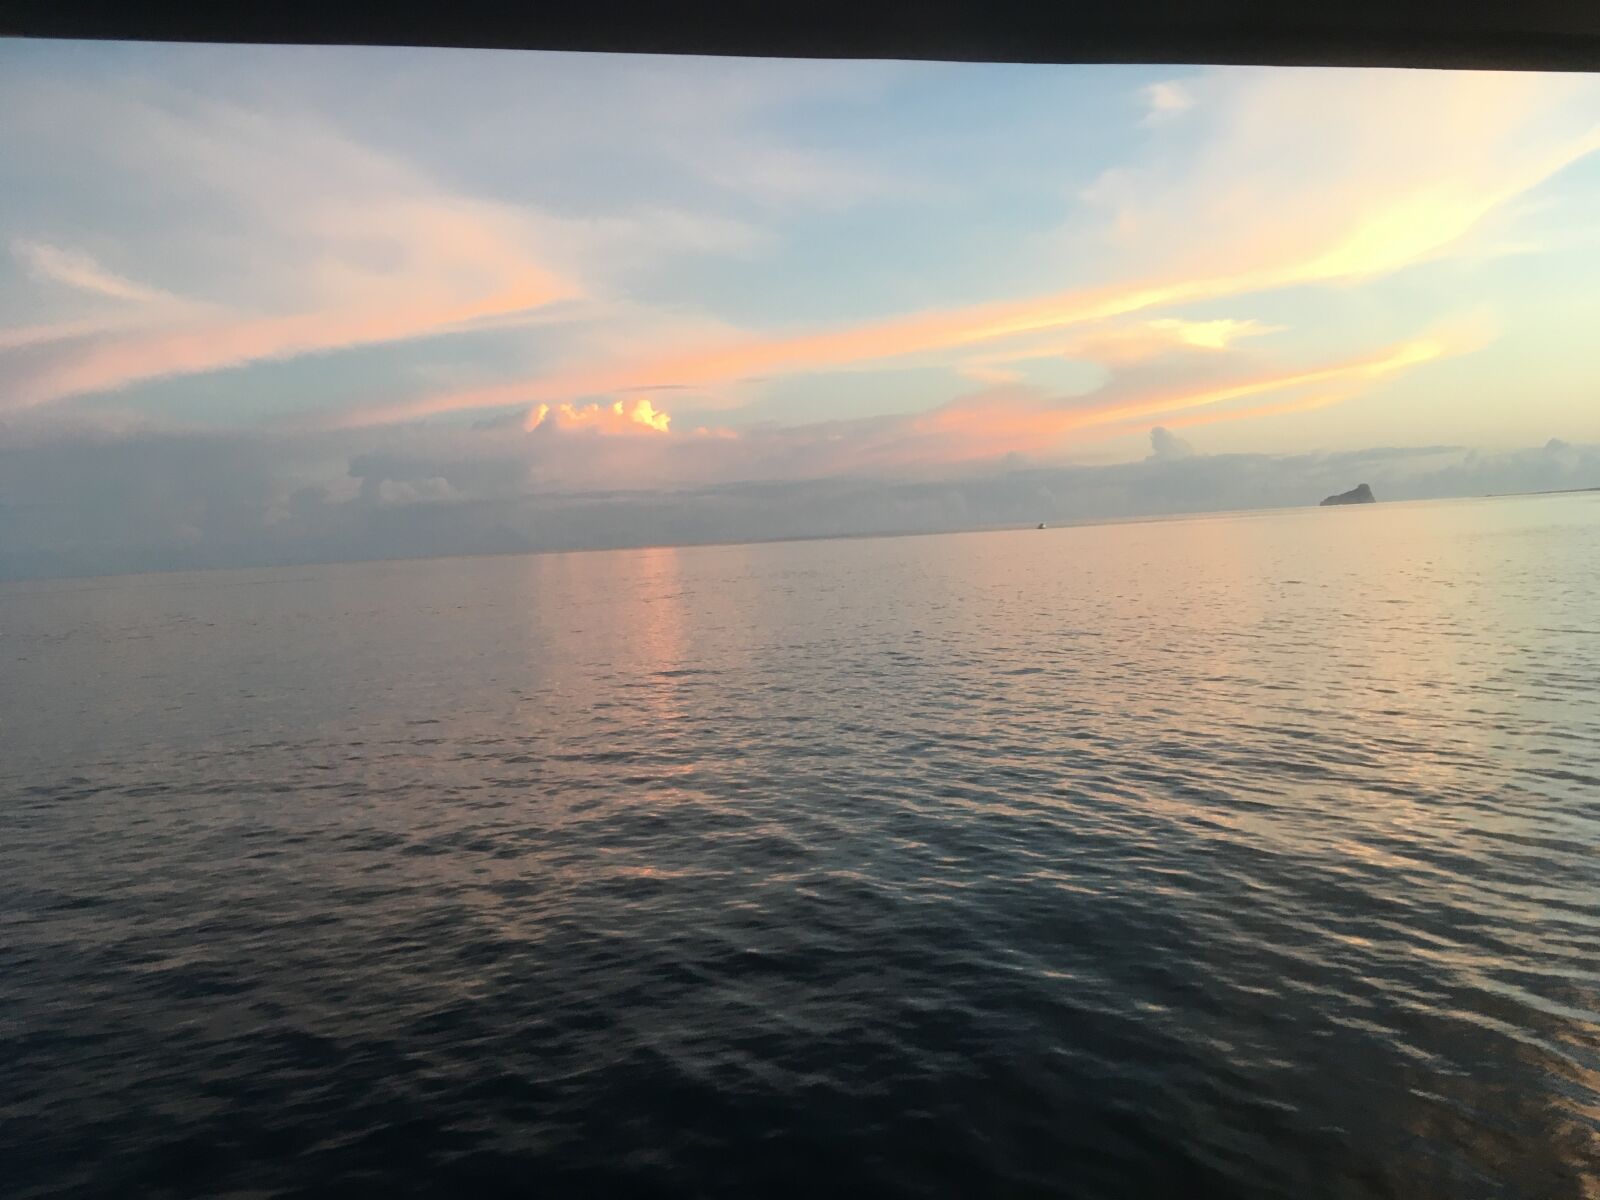 Apple iPhone SE sample photo. Sunset, galapagos islands, ecuador photography